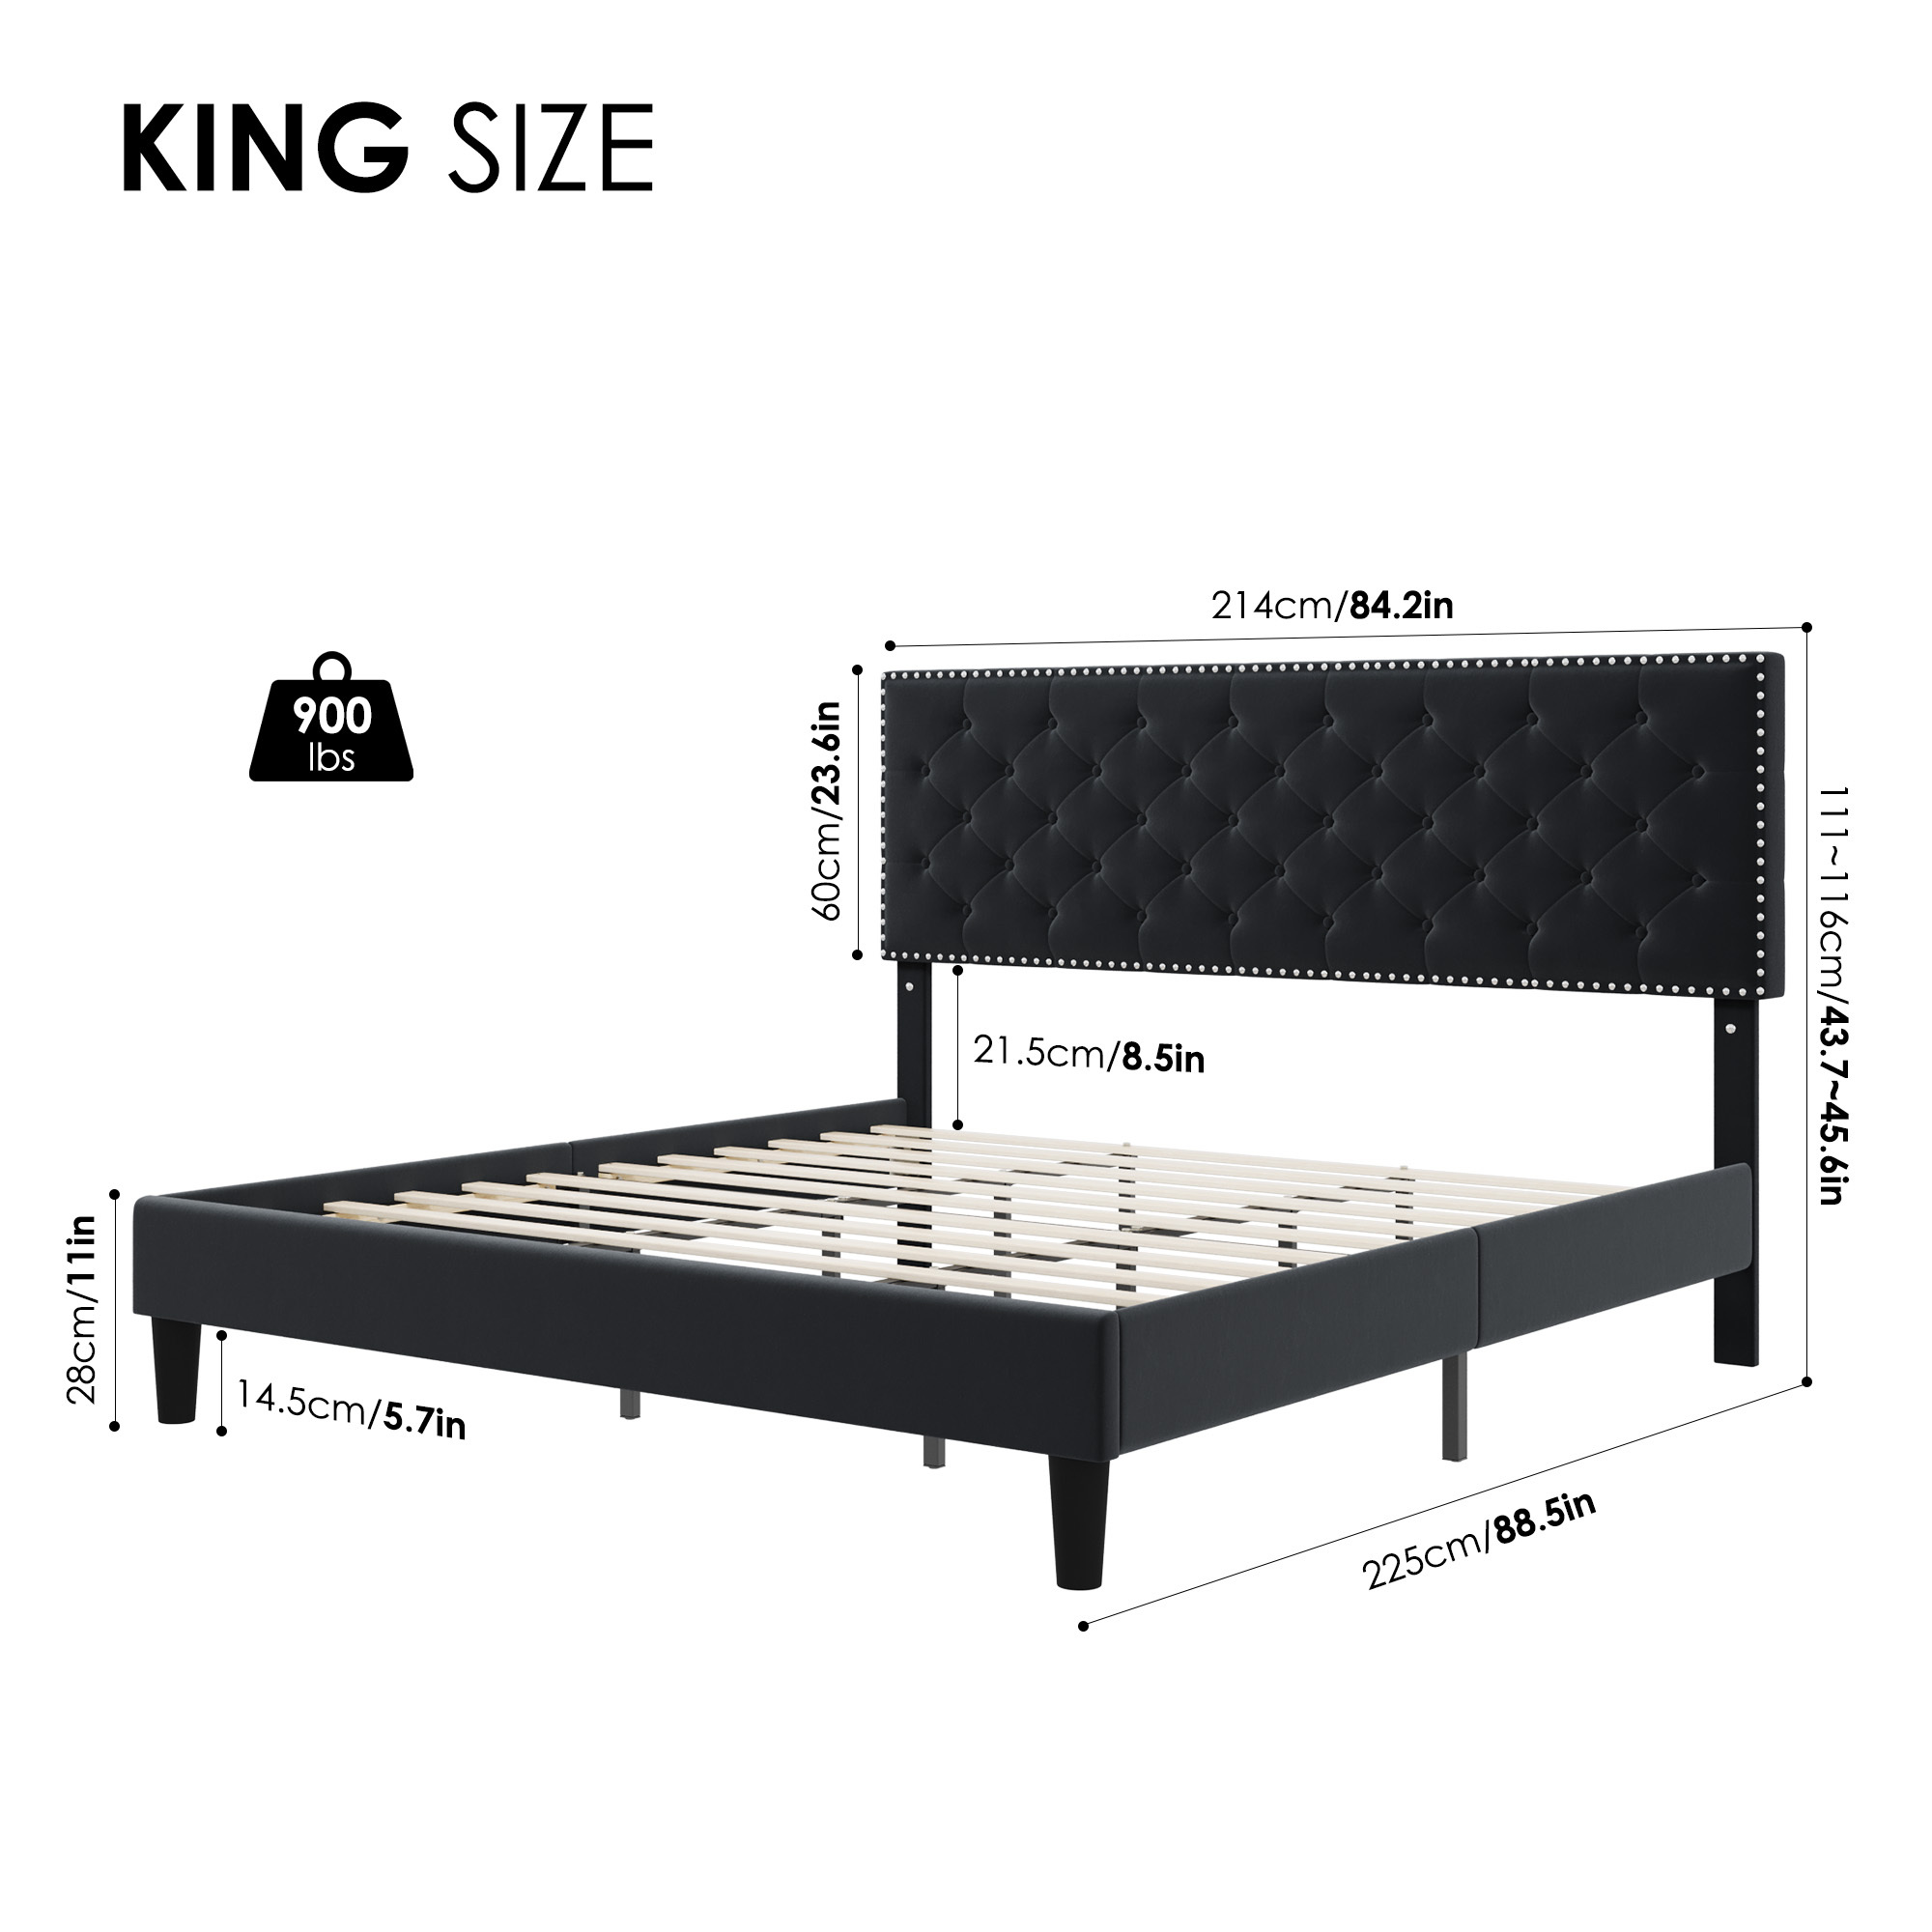 Homfa King Size Bed, Modern Upholstered Platform Bed Frame with Adjustable Headboard for Bedroom, Black - image 2 of 7